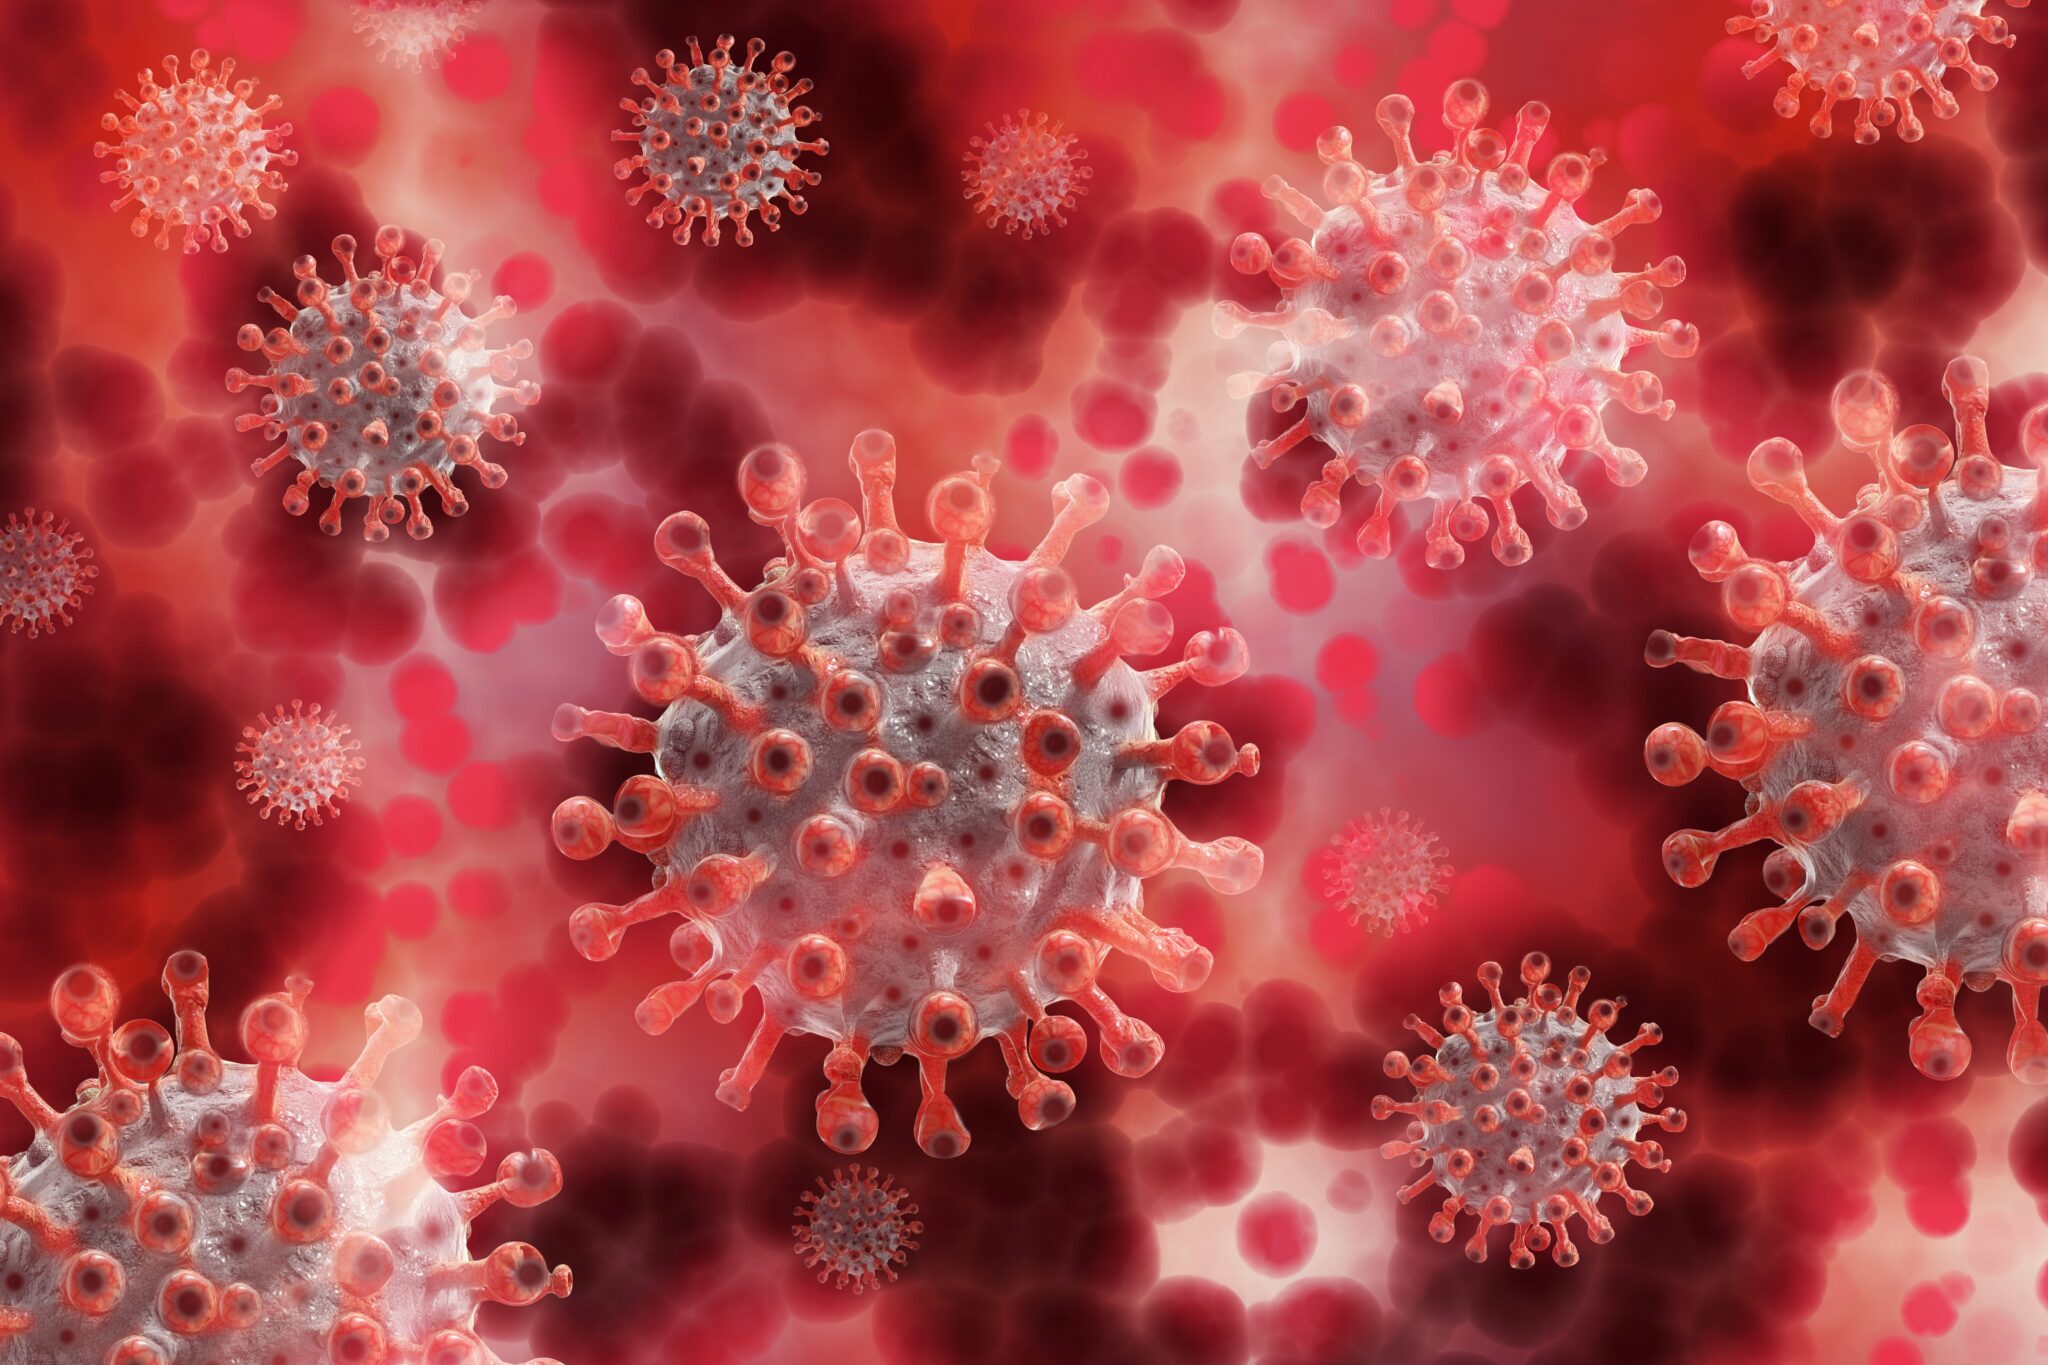 Computergrafik des Corona-Virus